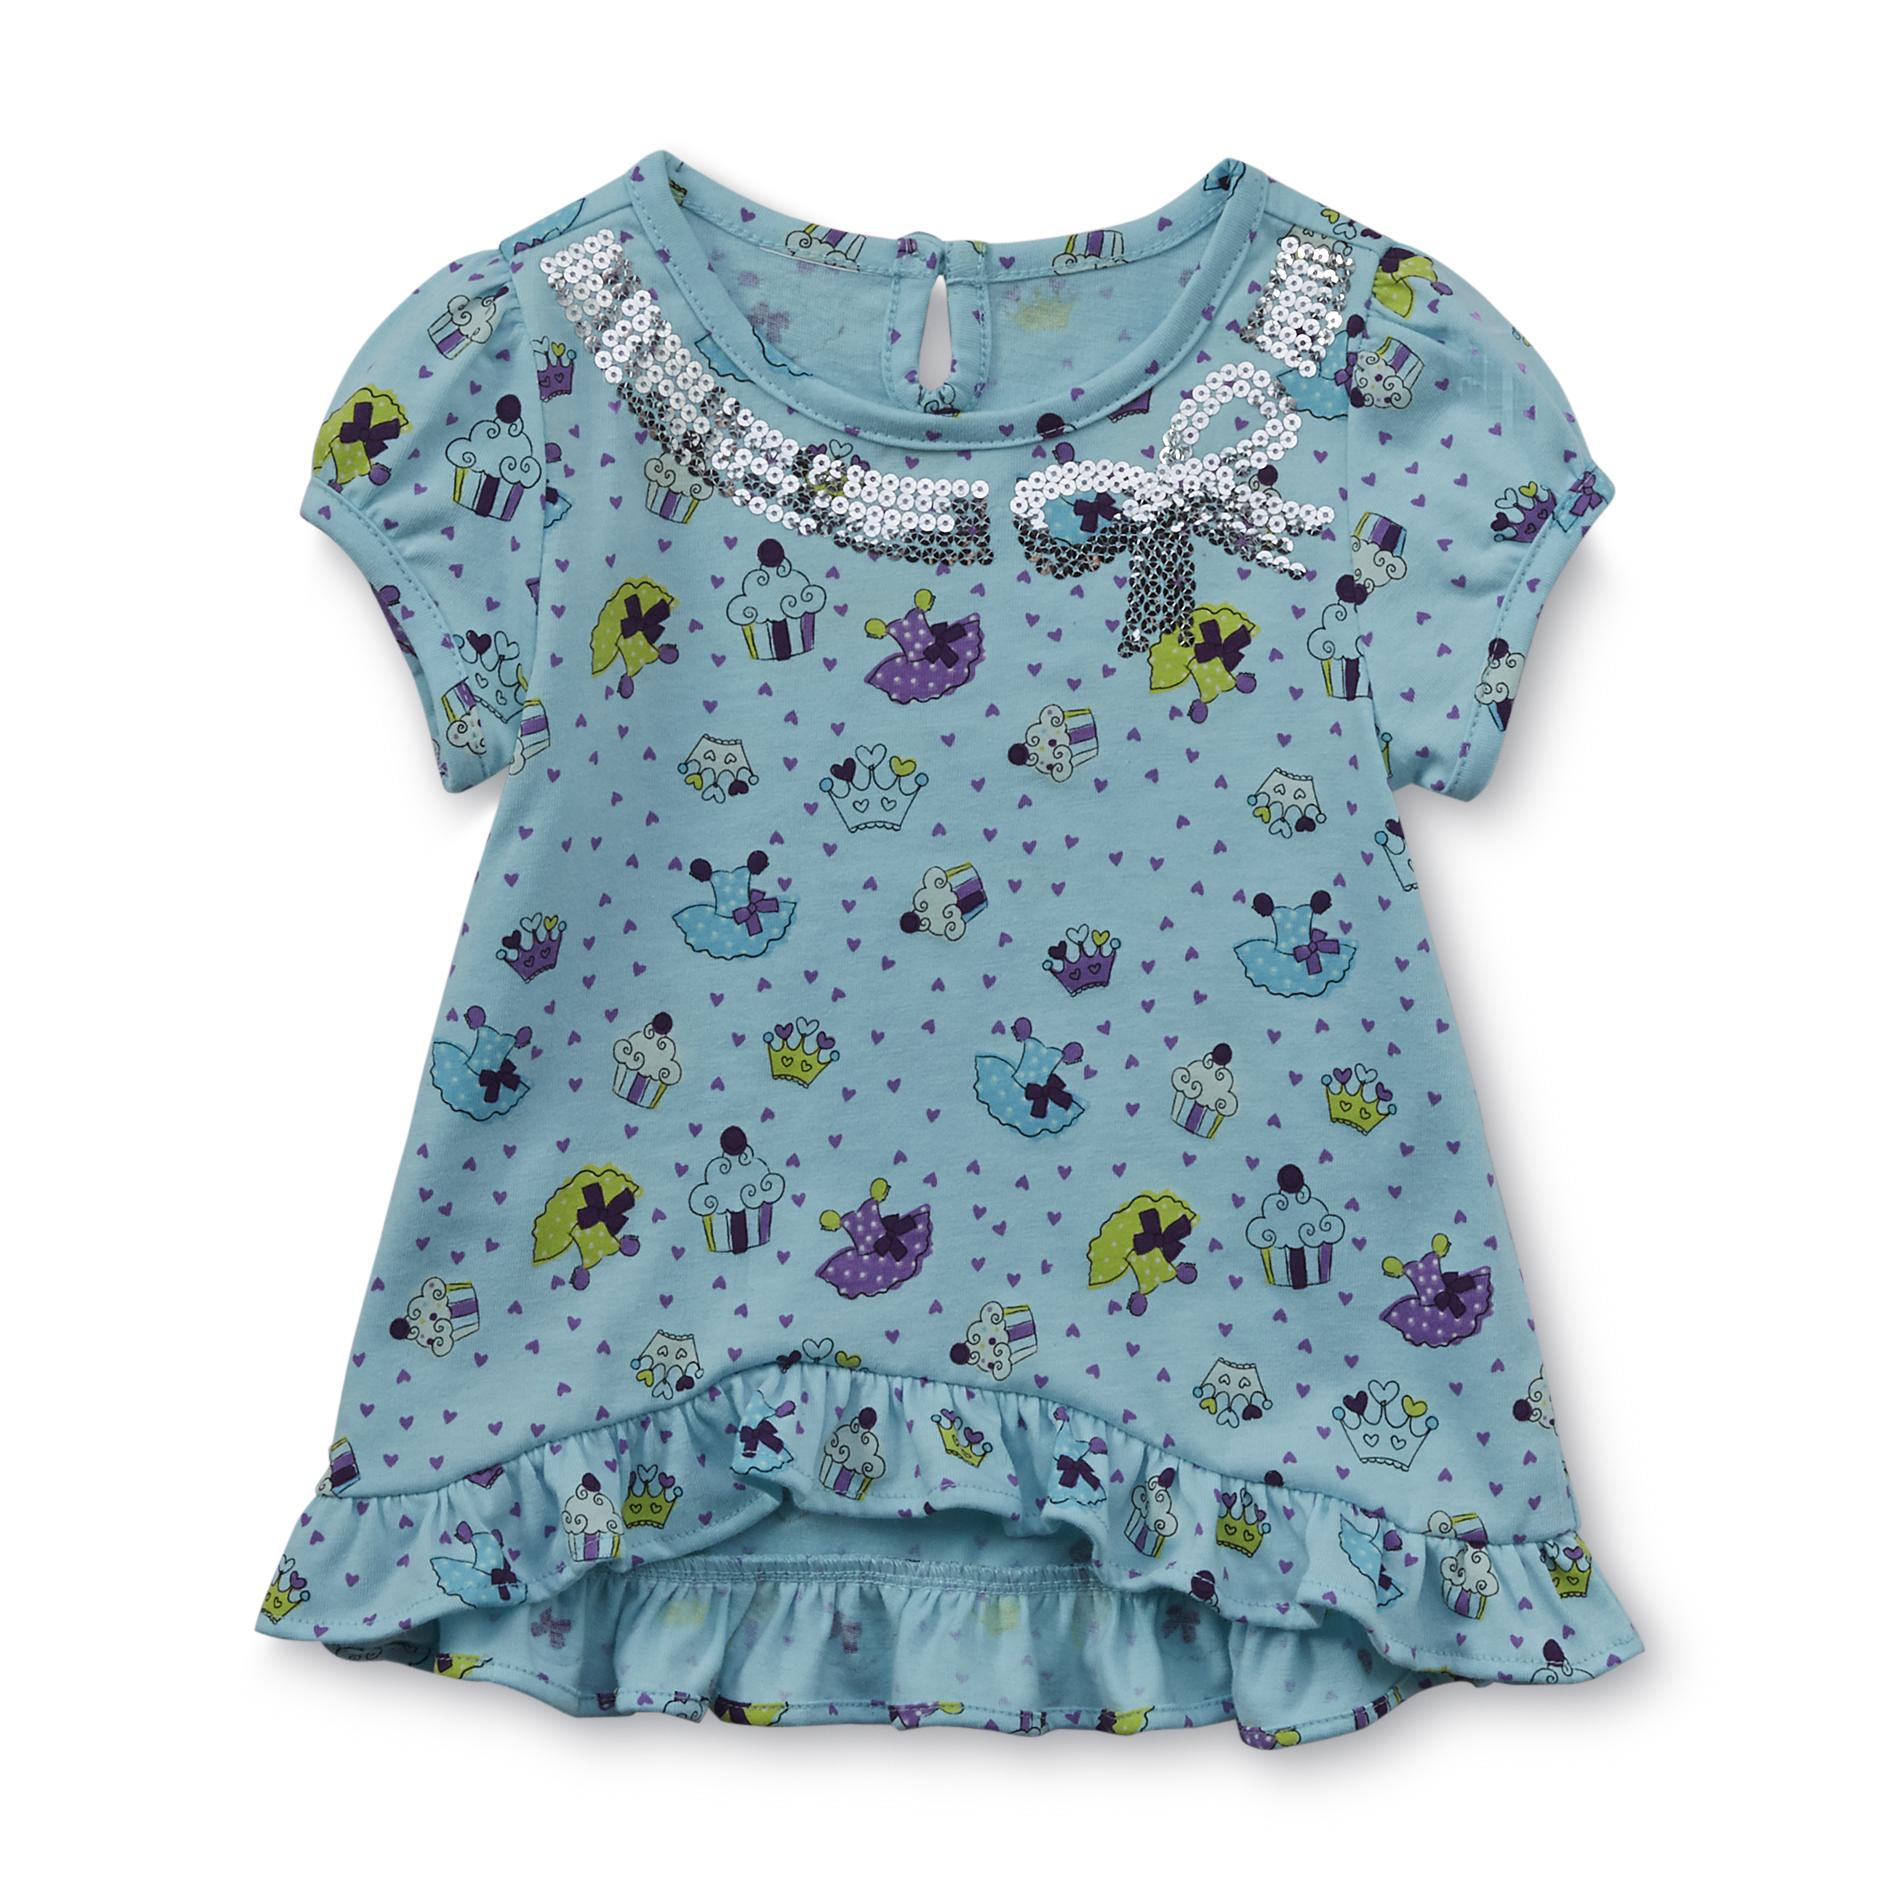 WonderKids Infant & Toddler Girl's Short-Sleeve Top - Sequin Bow